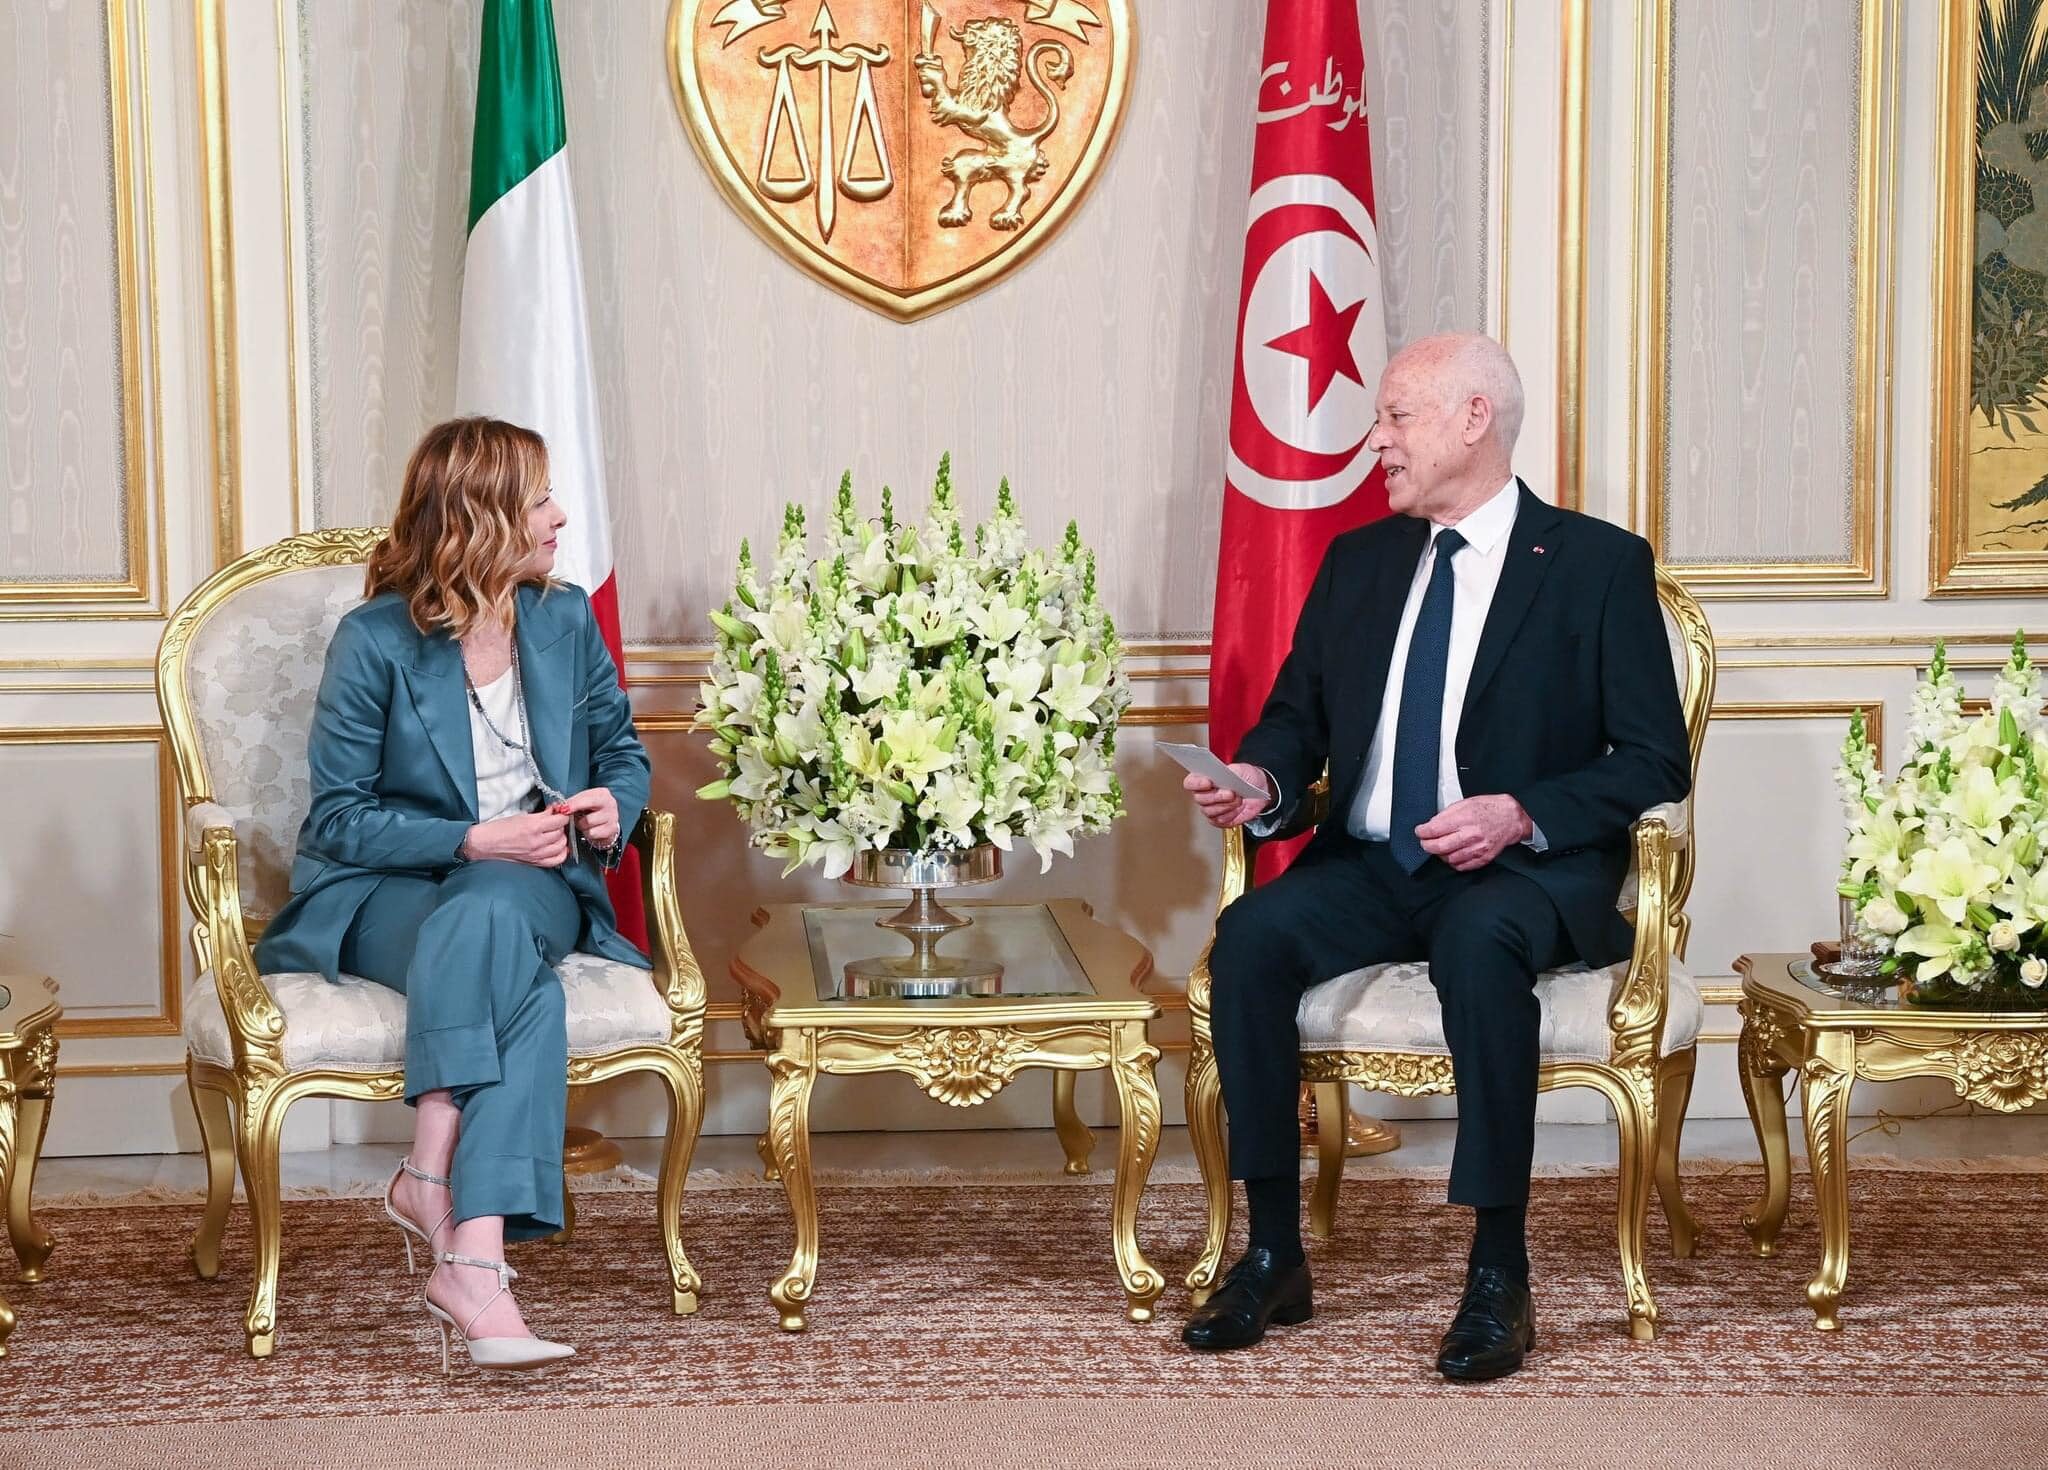 خلال لقاء الرئيس التونسي برئيسة مجلس الوزراء الايطالية تأكيد على أن “تونس لا يمكن أن تكون بلد وصول للمهاجرين”